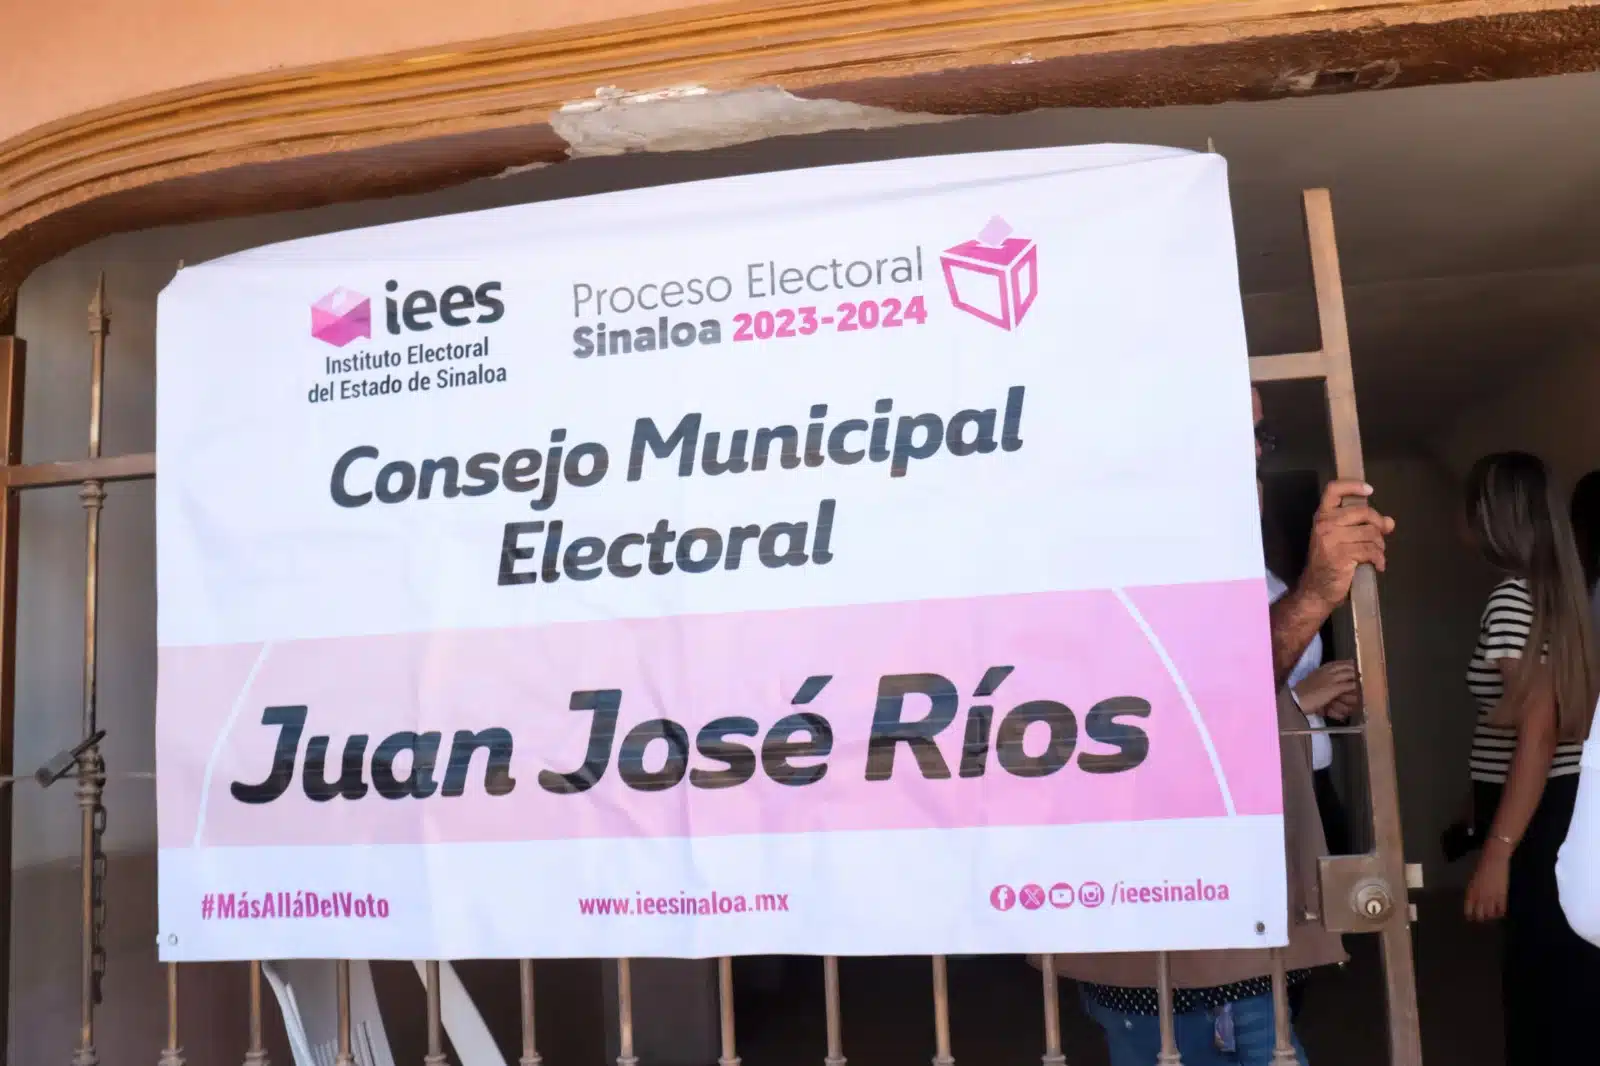 Consejo Municipal Electoral de Juan José Ríos